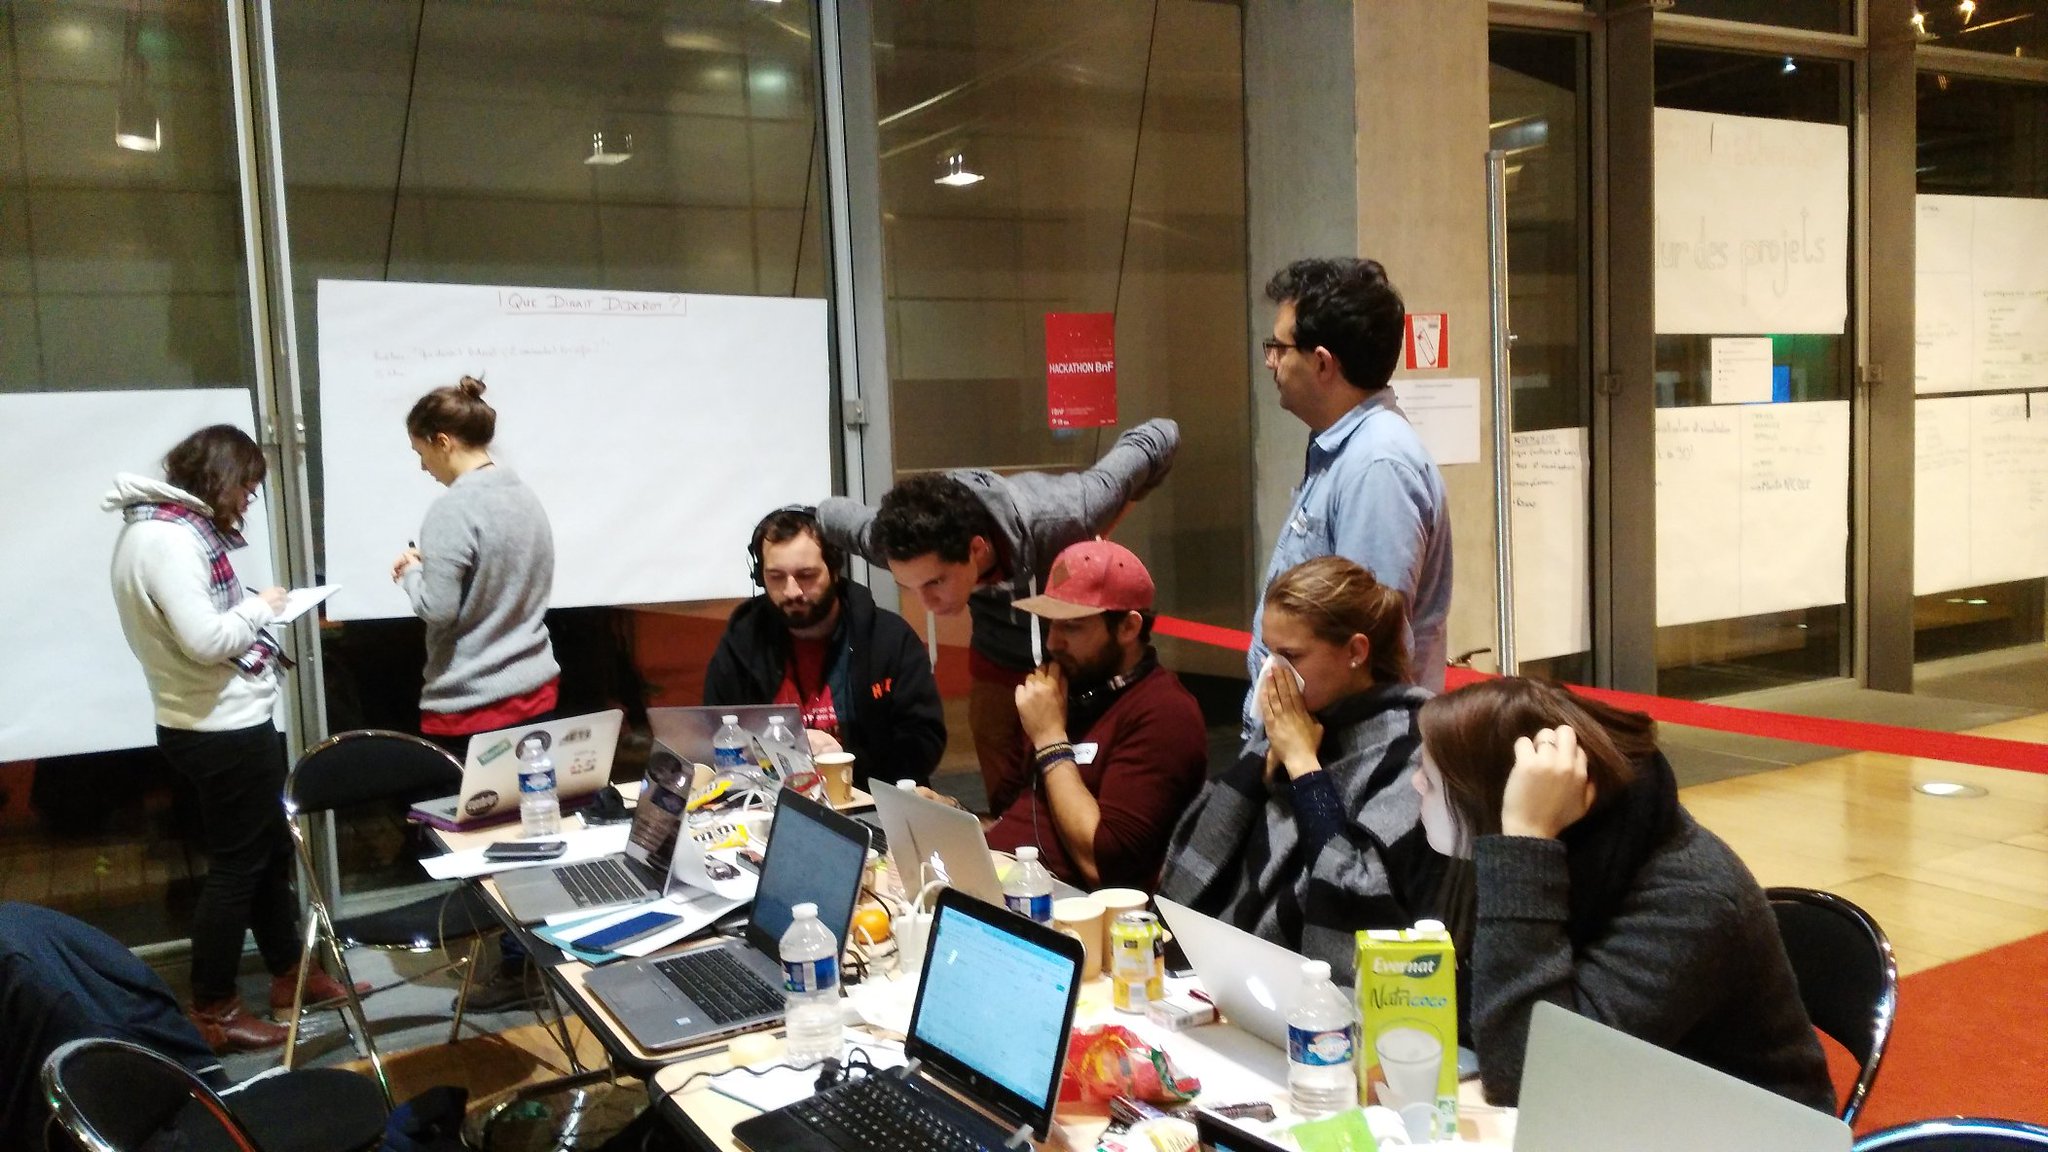 La team #QueDiraitDiderot en pleine concentration #hackathonBnF https://t.co/hckOjI0vmm